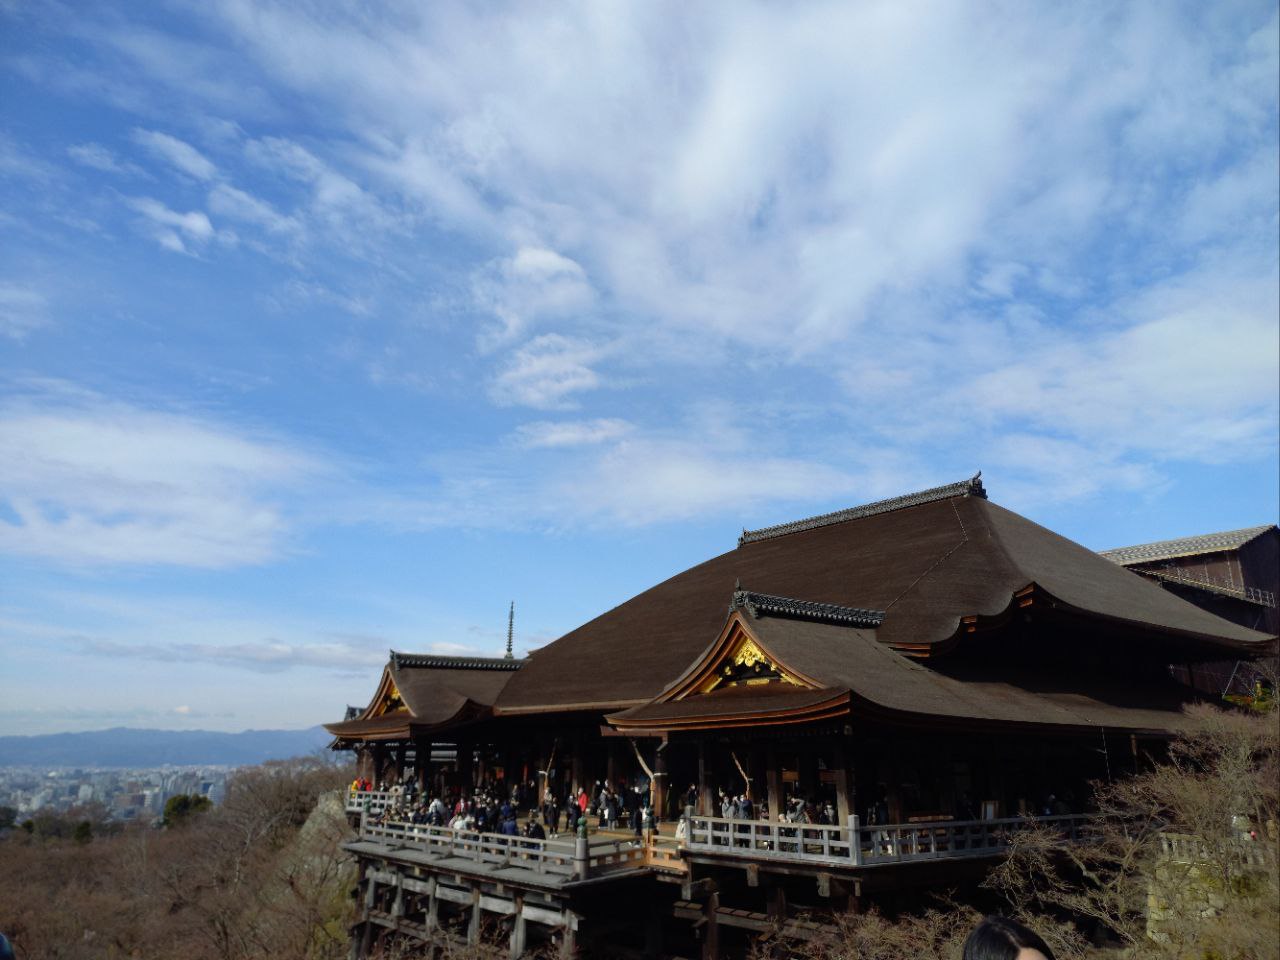 Kiyomizu-dera, wisata di Kyoto yang juga dilengkapi dengan toko oleh-oleh. (KOMPAS.COM/YUHARRANI AISYAH)